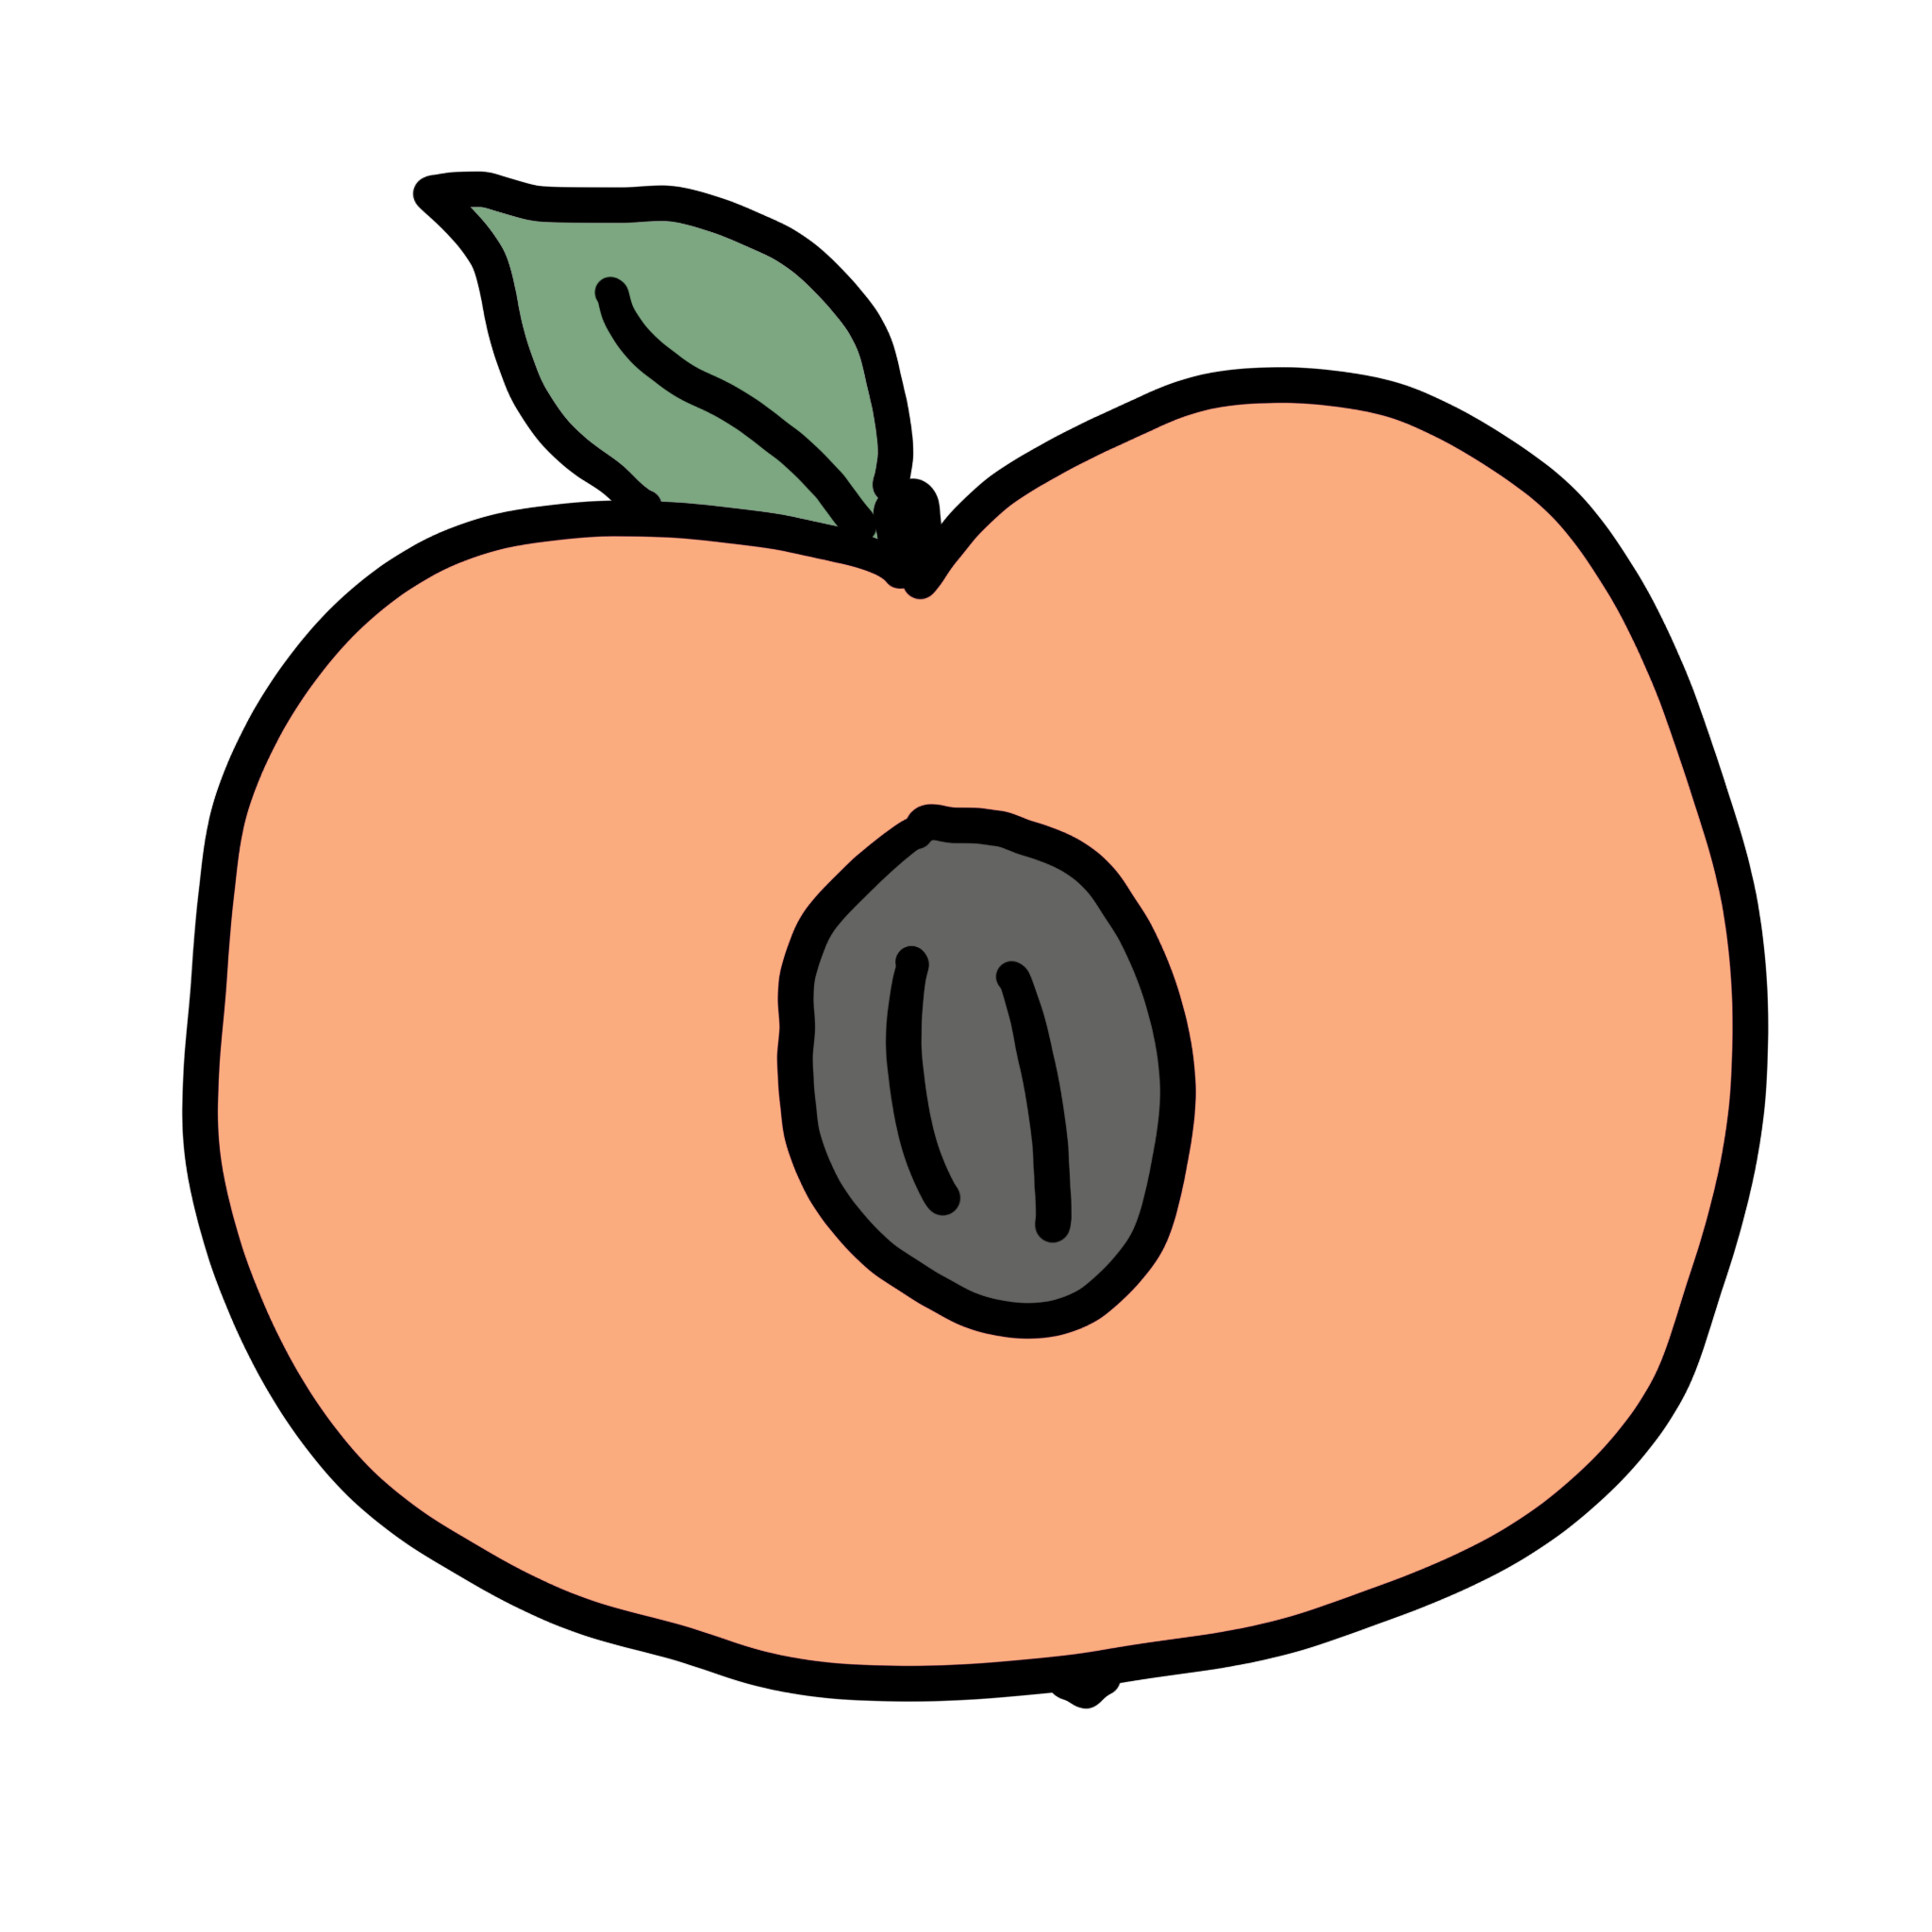 A peach, cut open with a core.